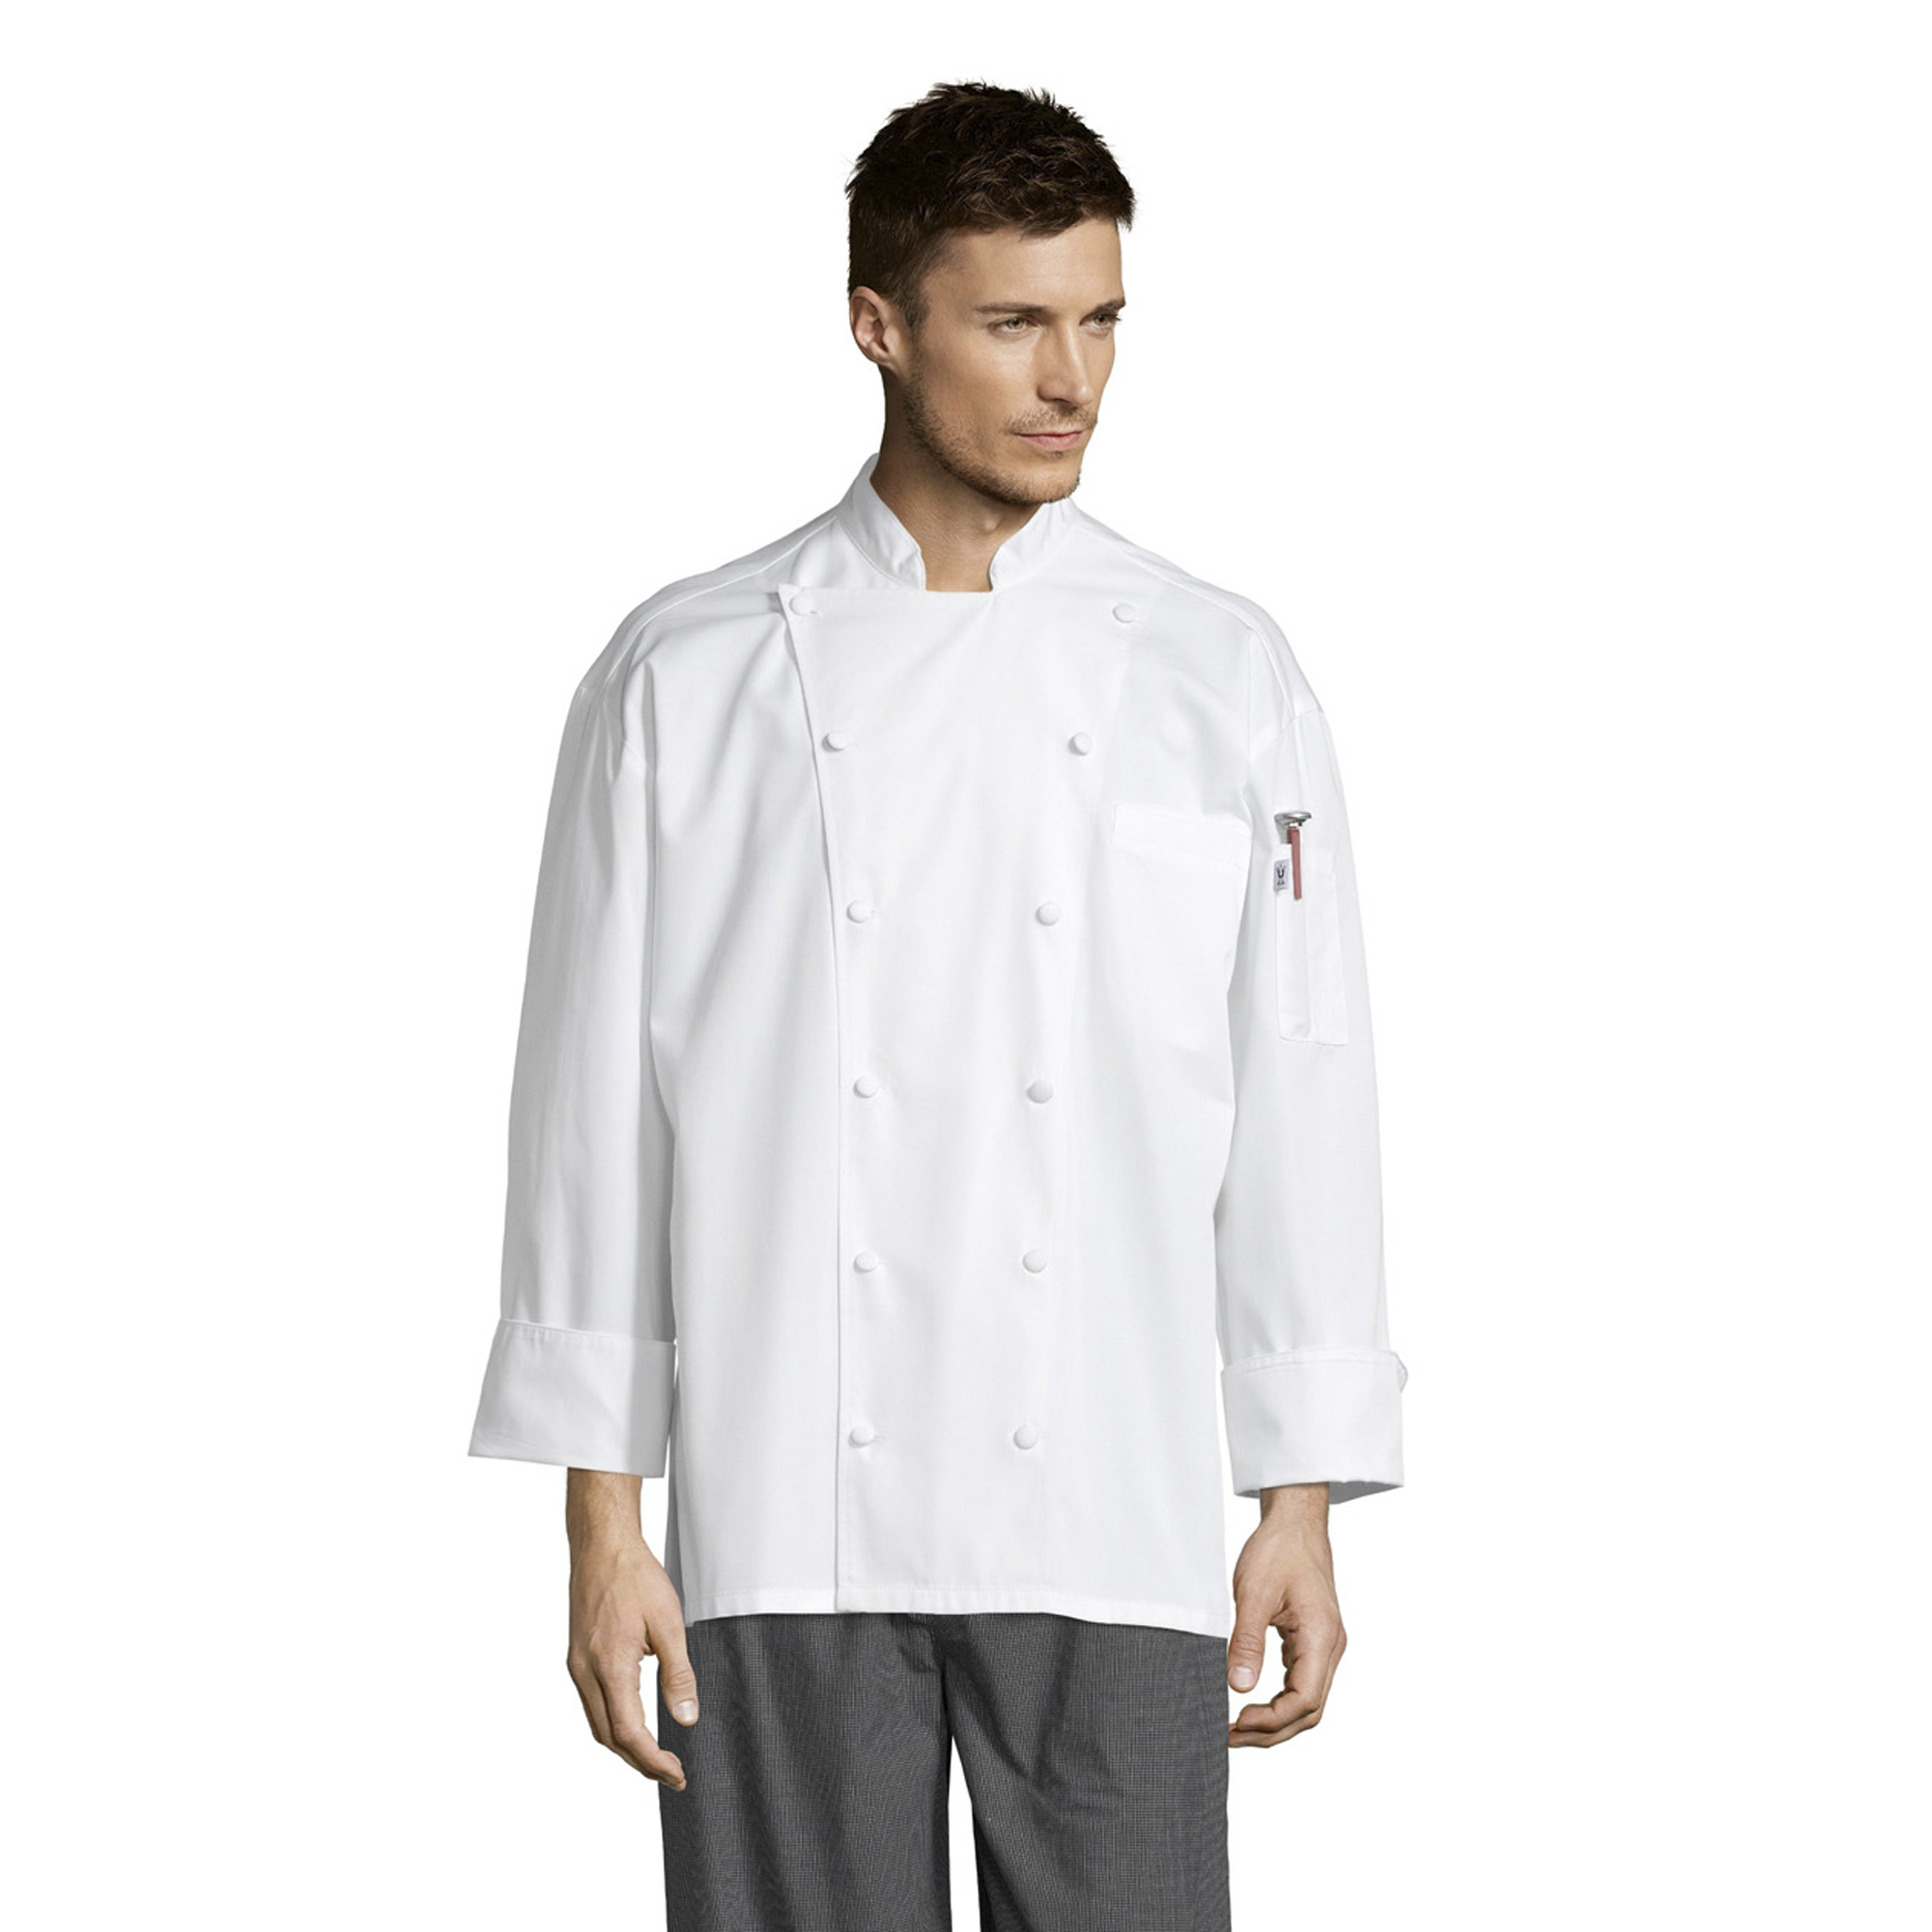 0481 Barbados Chef Coat